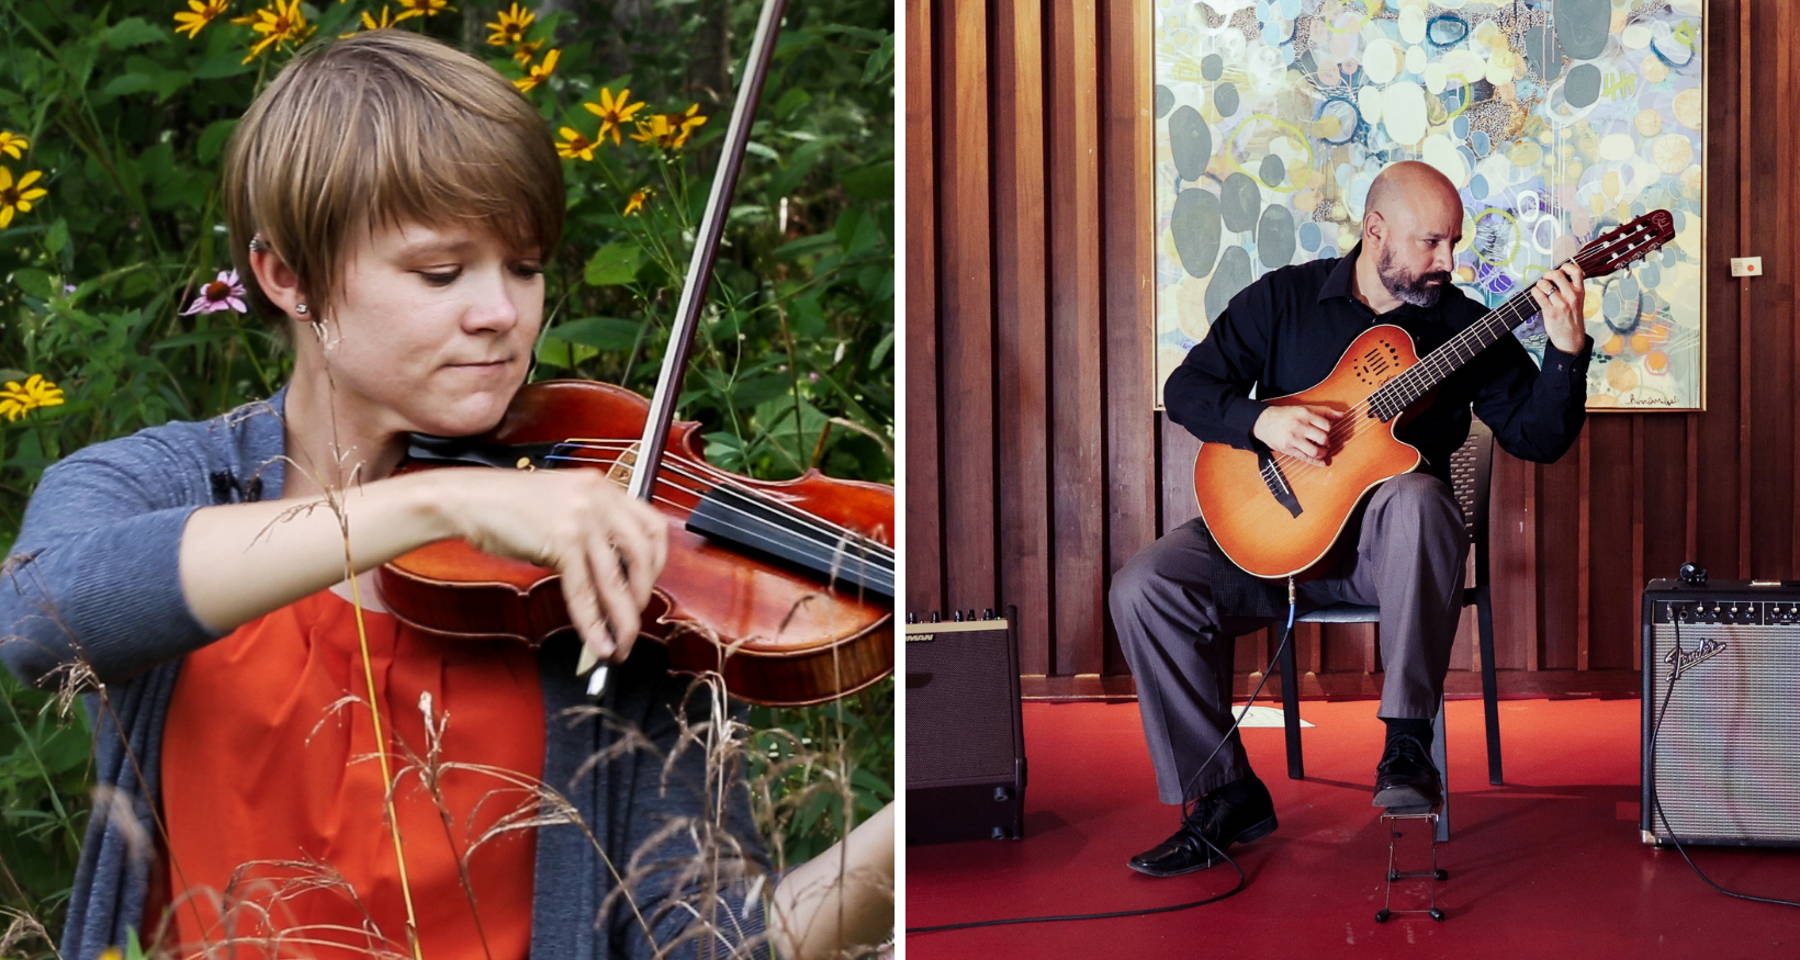 Sarah Page performs violin in nature and John Alvarado performs classical guitar